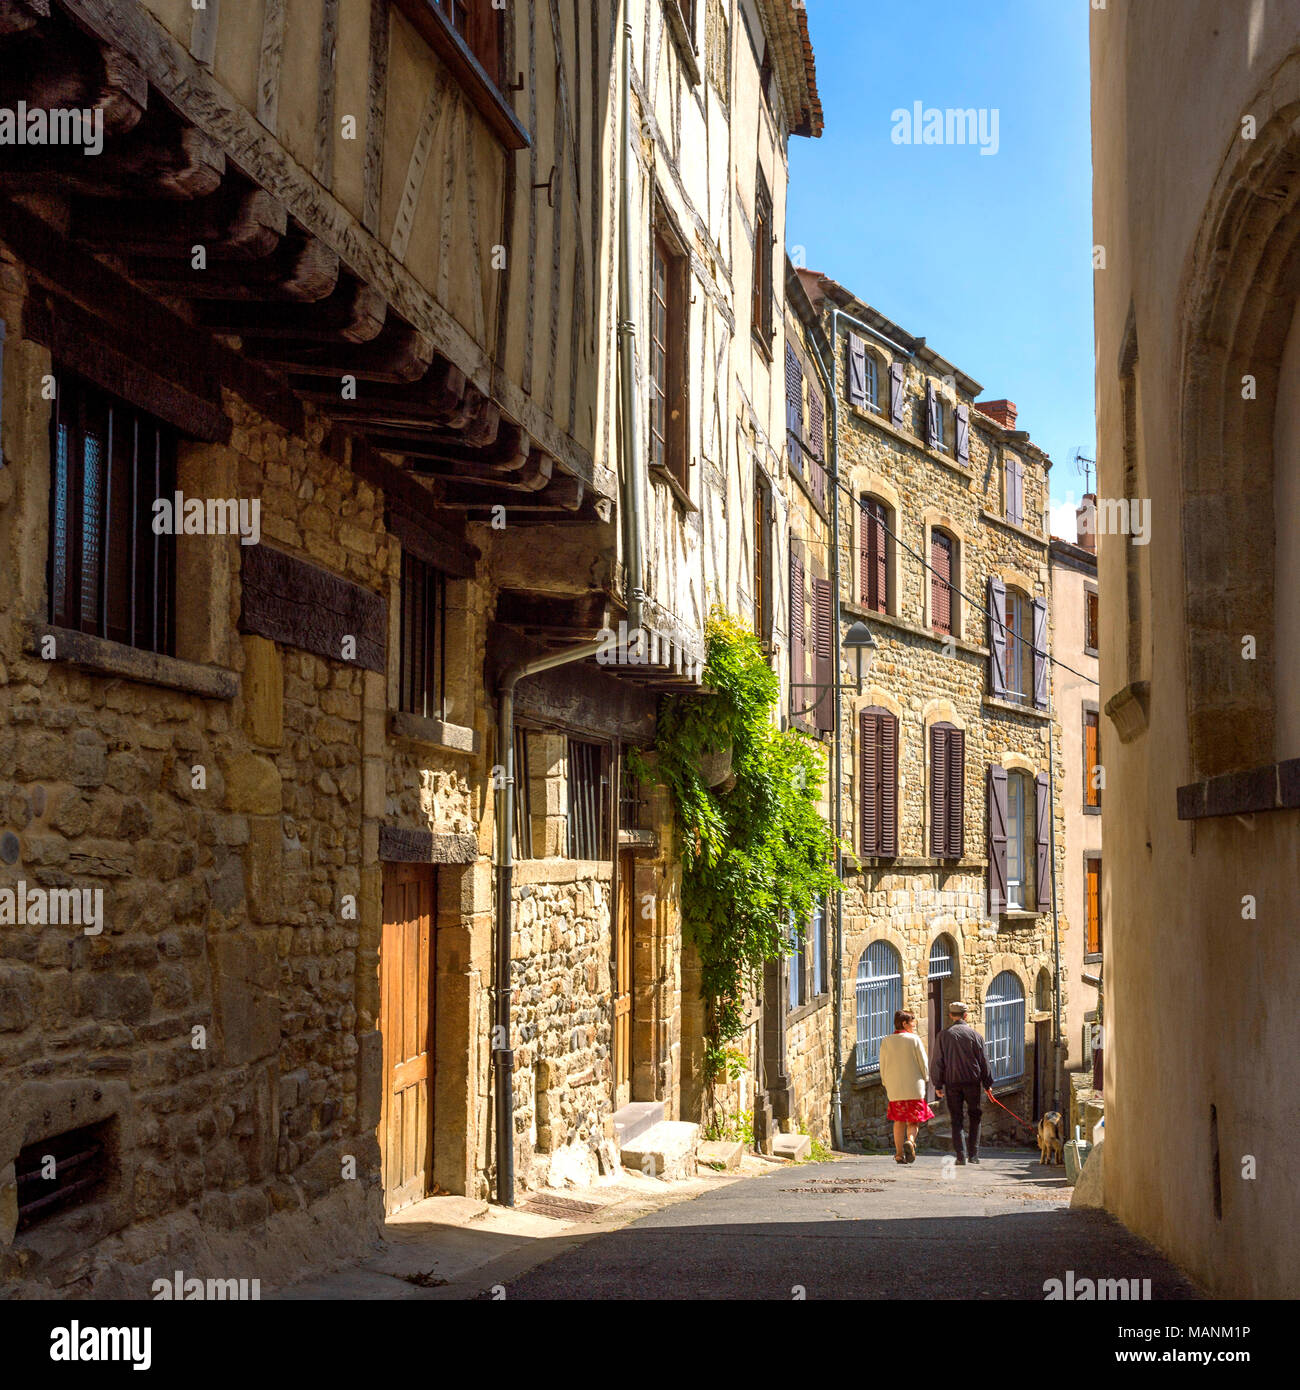 Village of Billom, Puy de Dôme, Auvergne, France Stock Photo